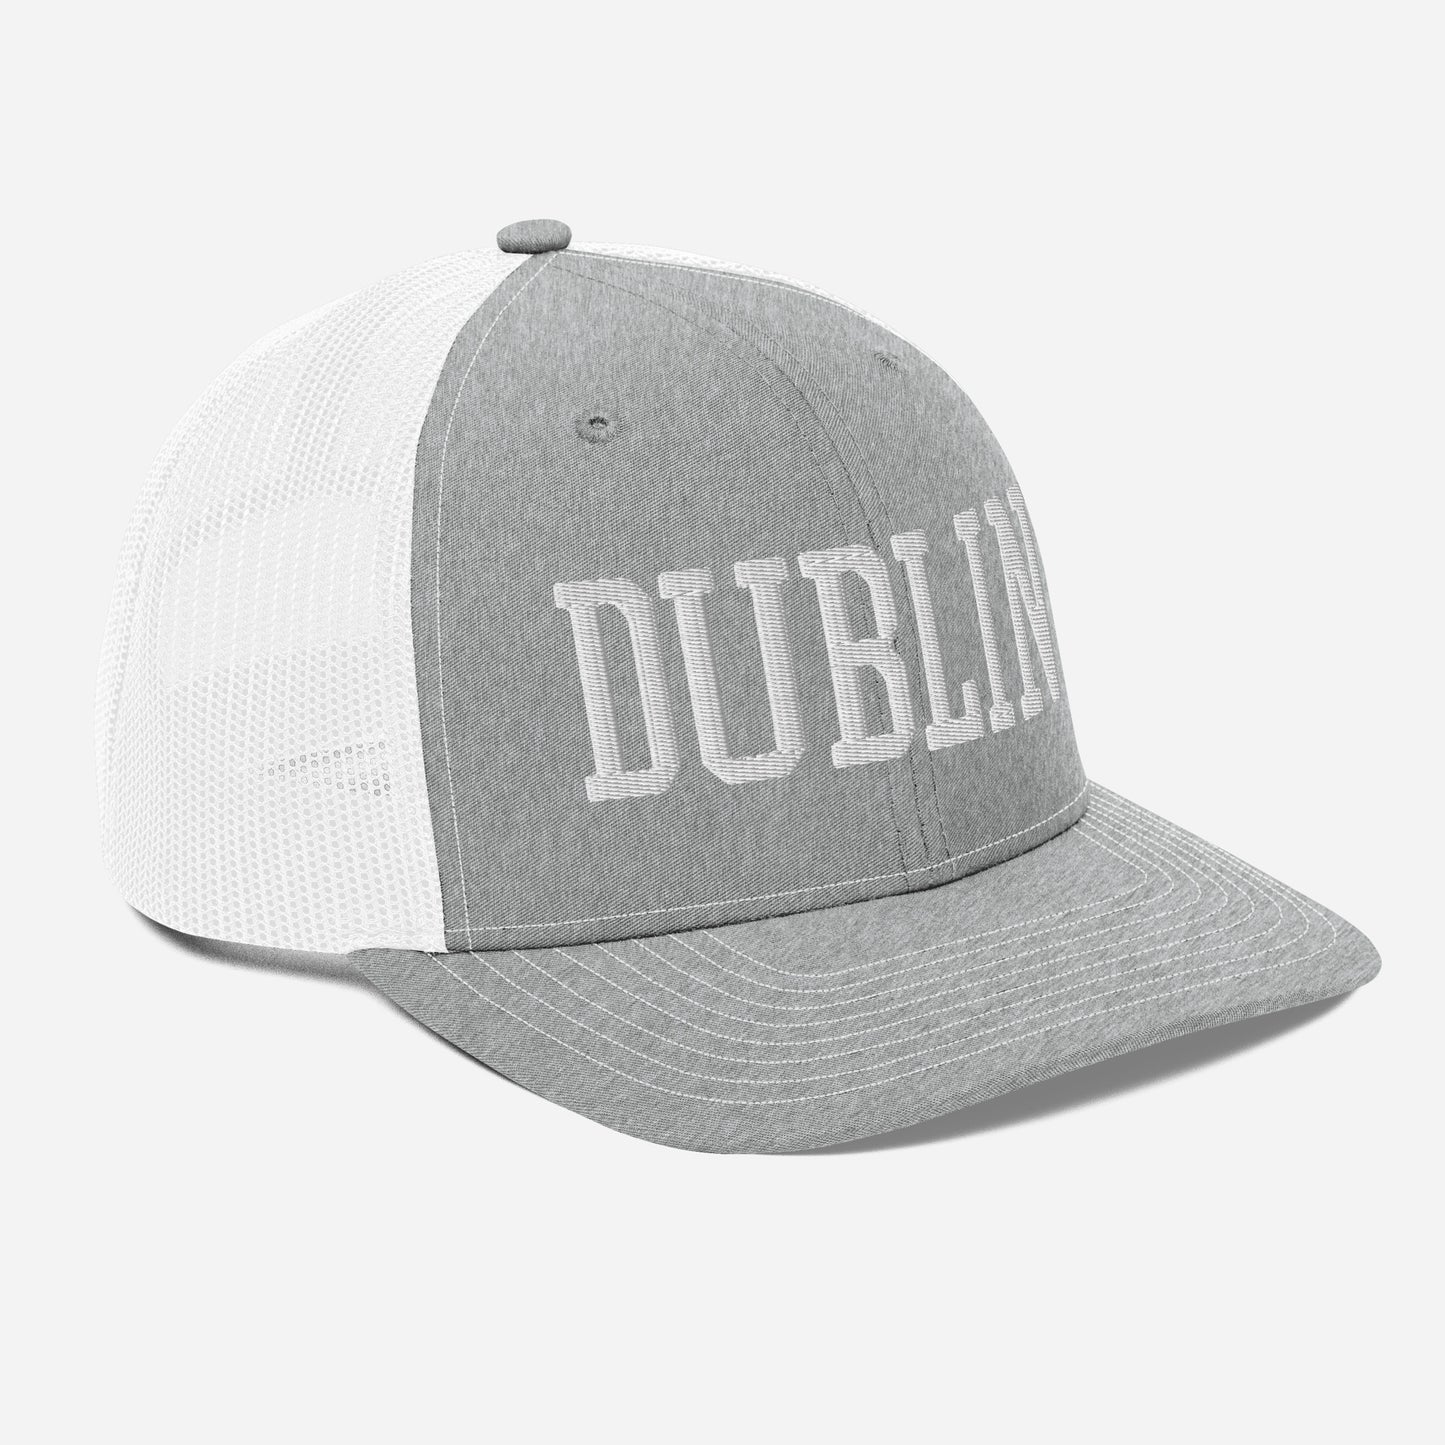 DUBLIN (simple white on gray)-Trucker Cap